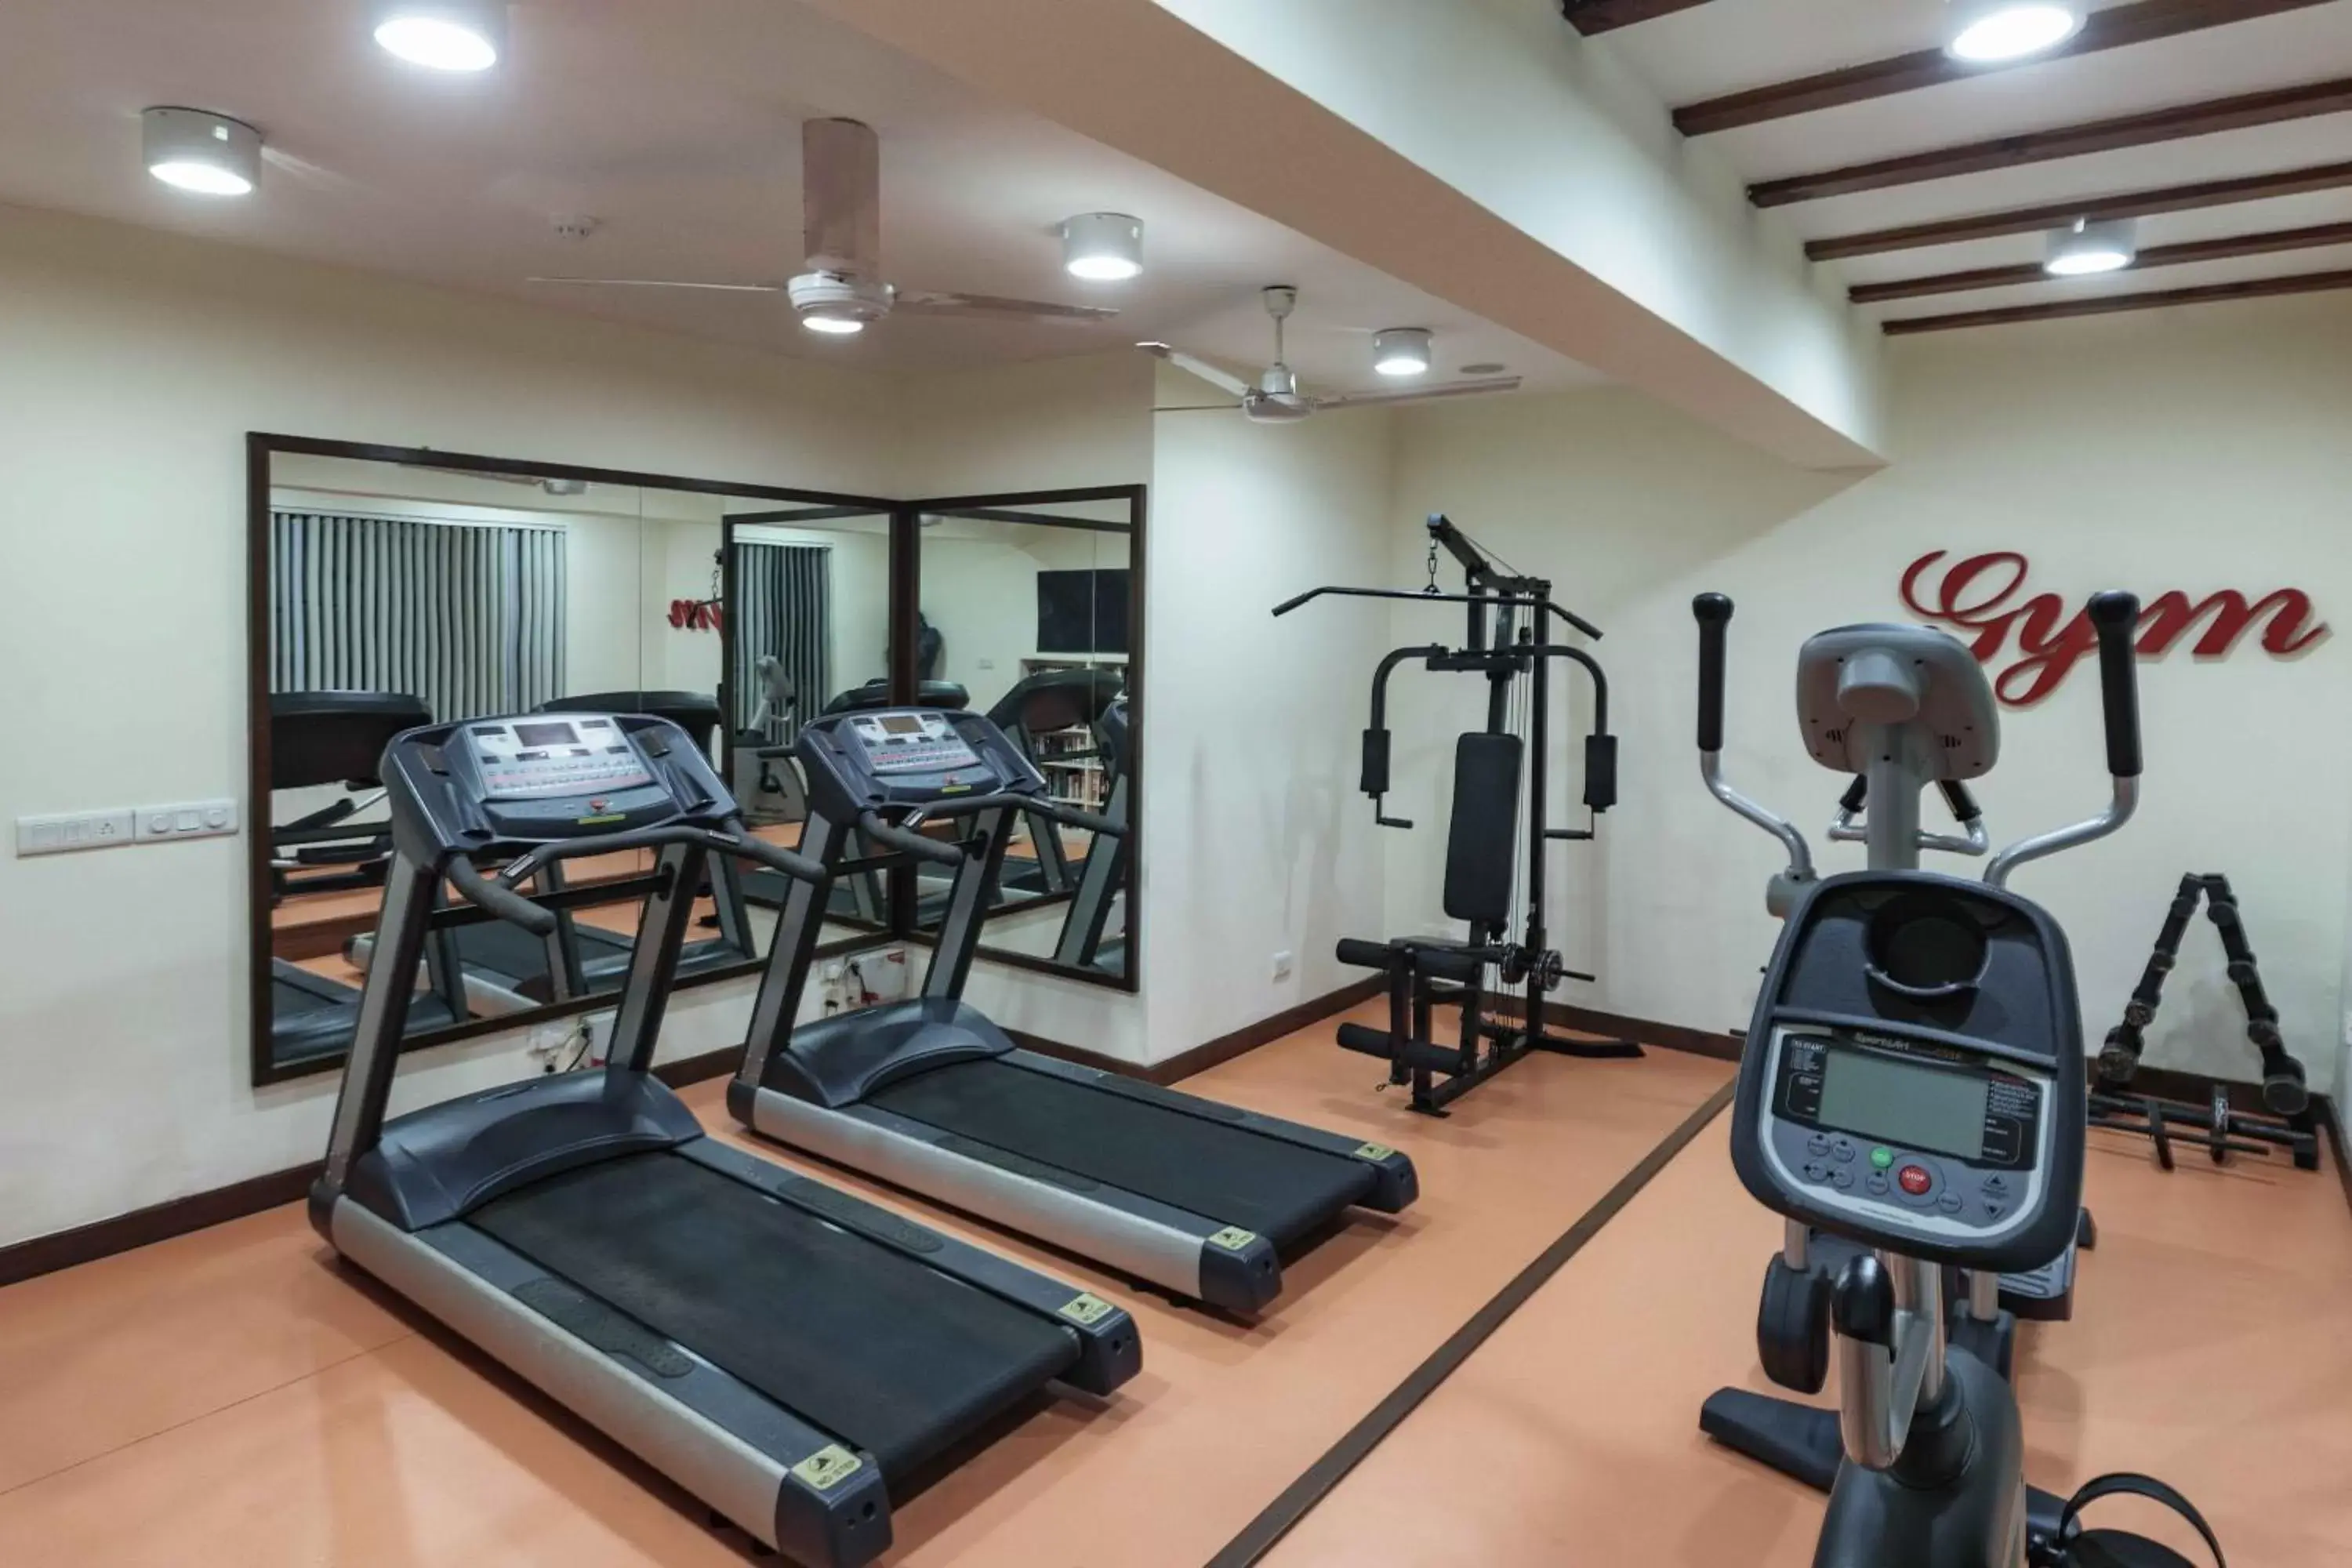 Fitness centre/facilities, Fitness Center/Facilities in Sonesta Inns - Candolim